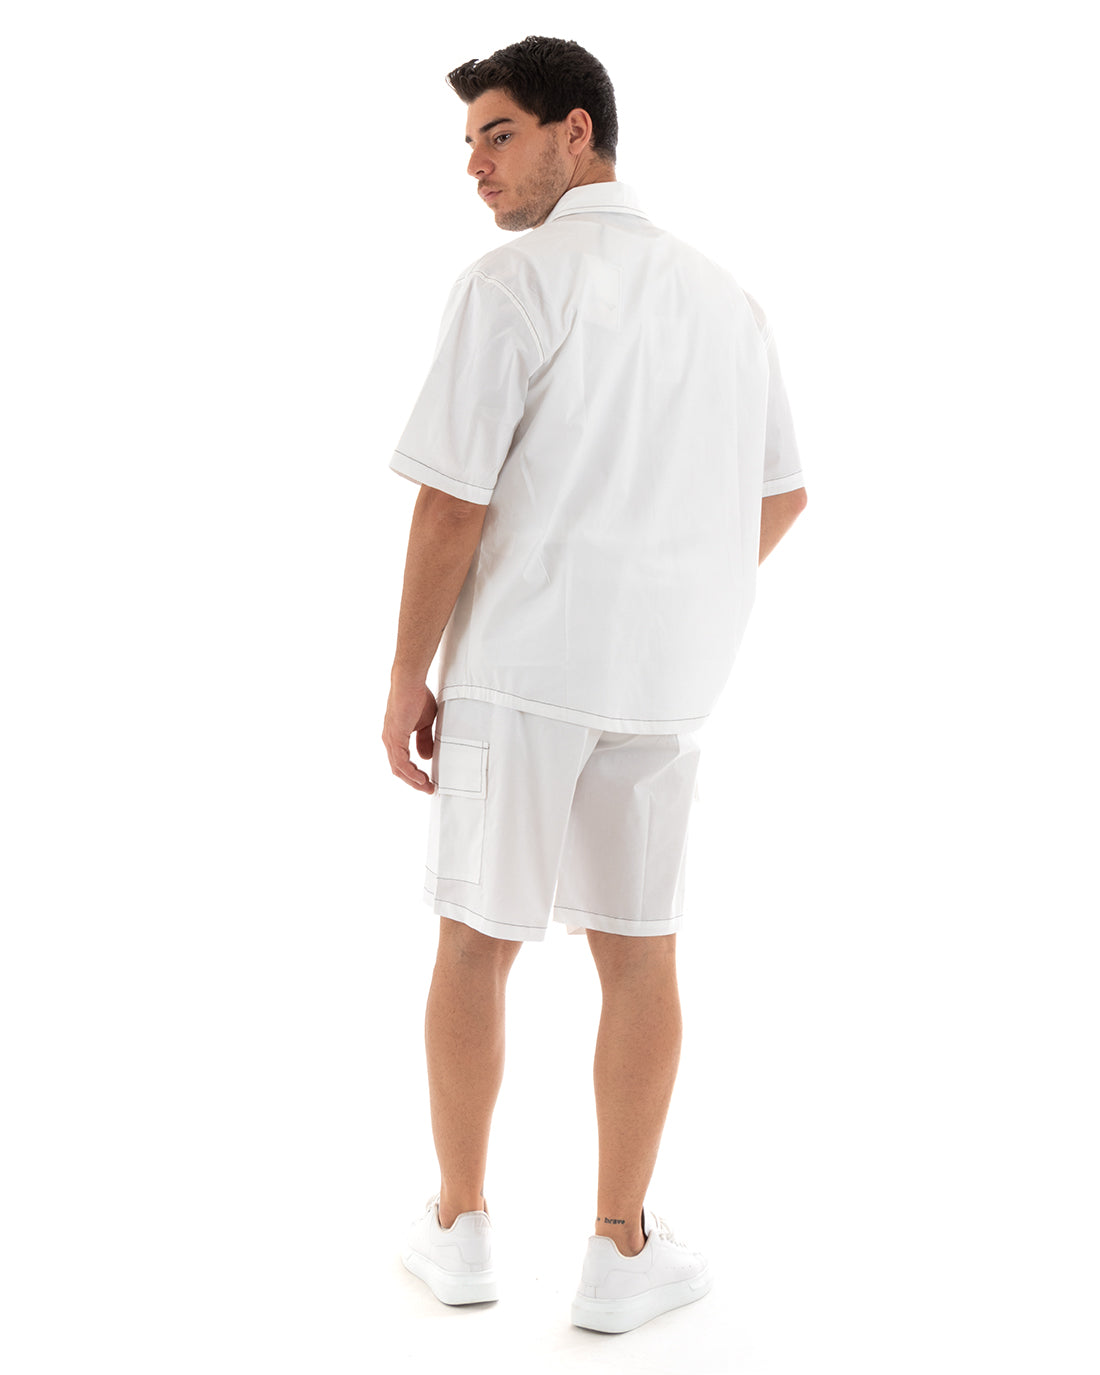 Completo Set Coordinato Uomo Cotone Camicia Con Colletto Bermuda Cargo Outfit Bianco GIOSAL-OU2368A